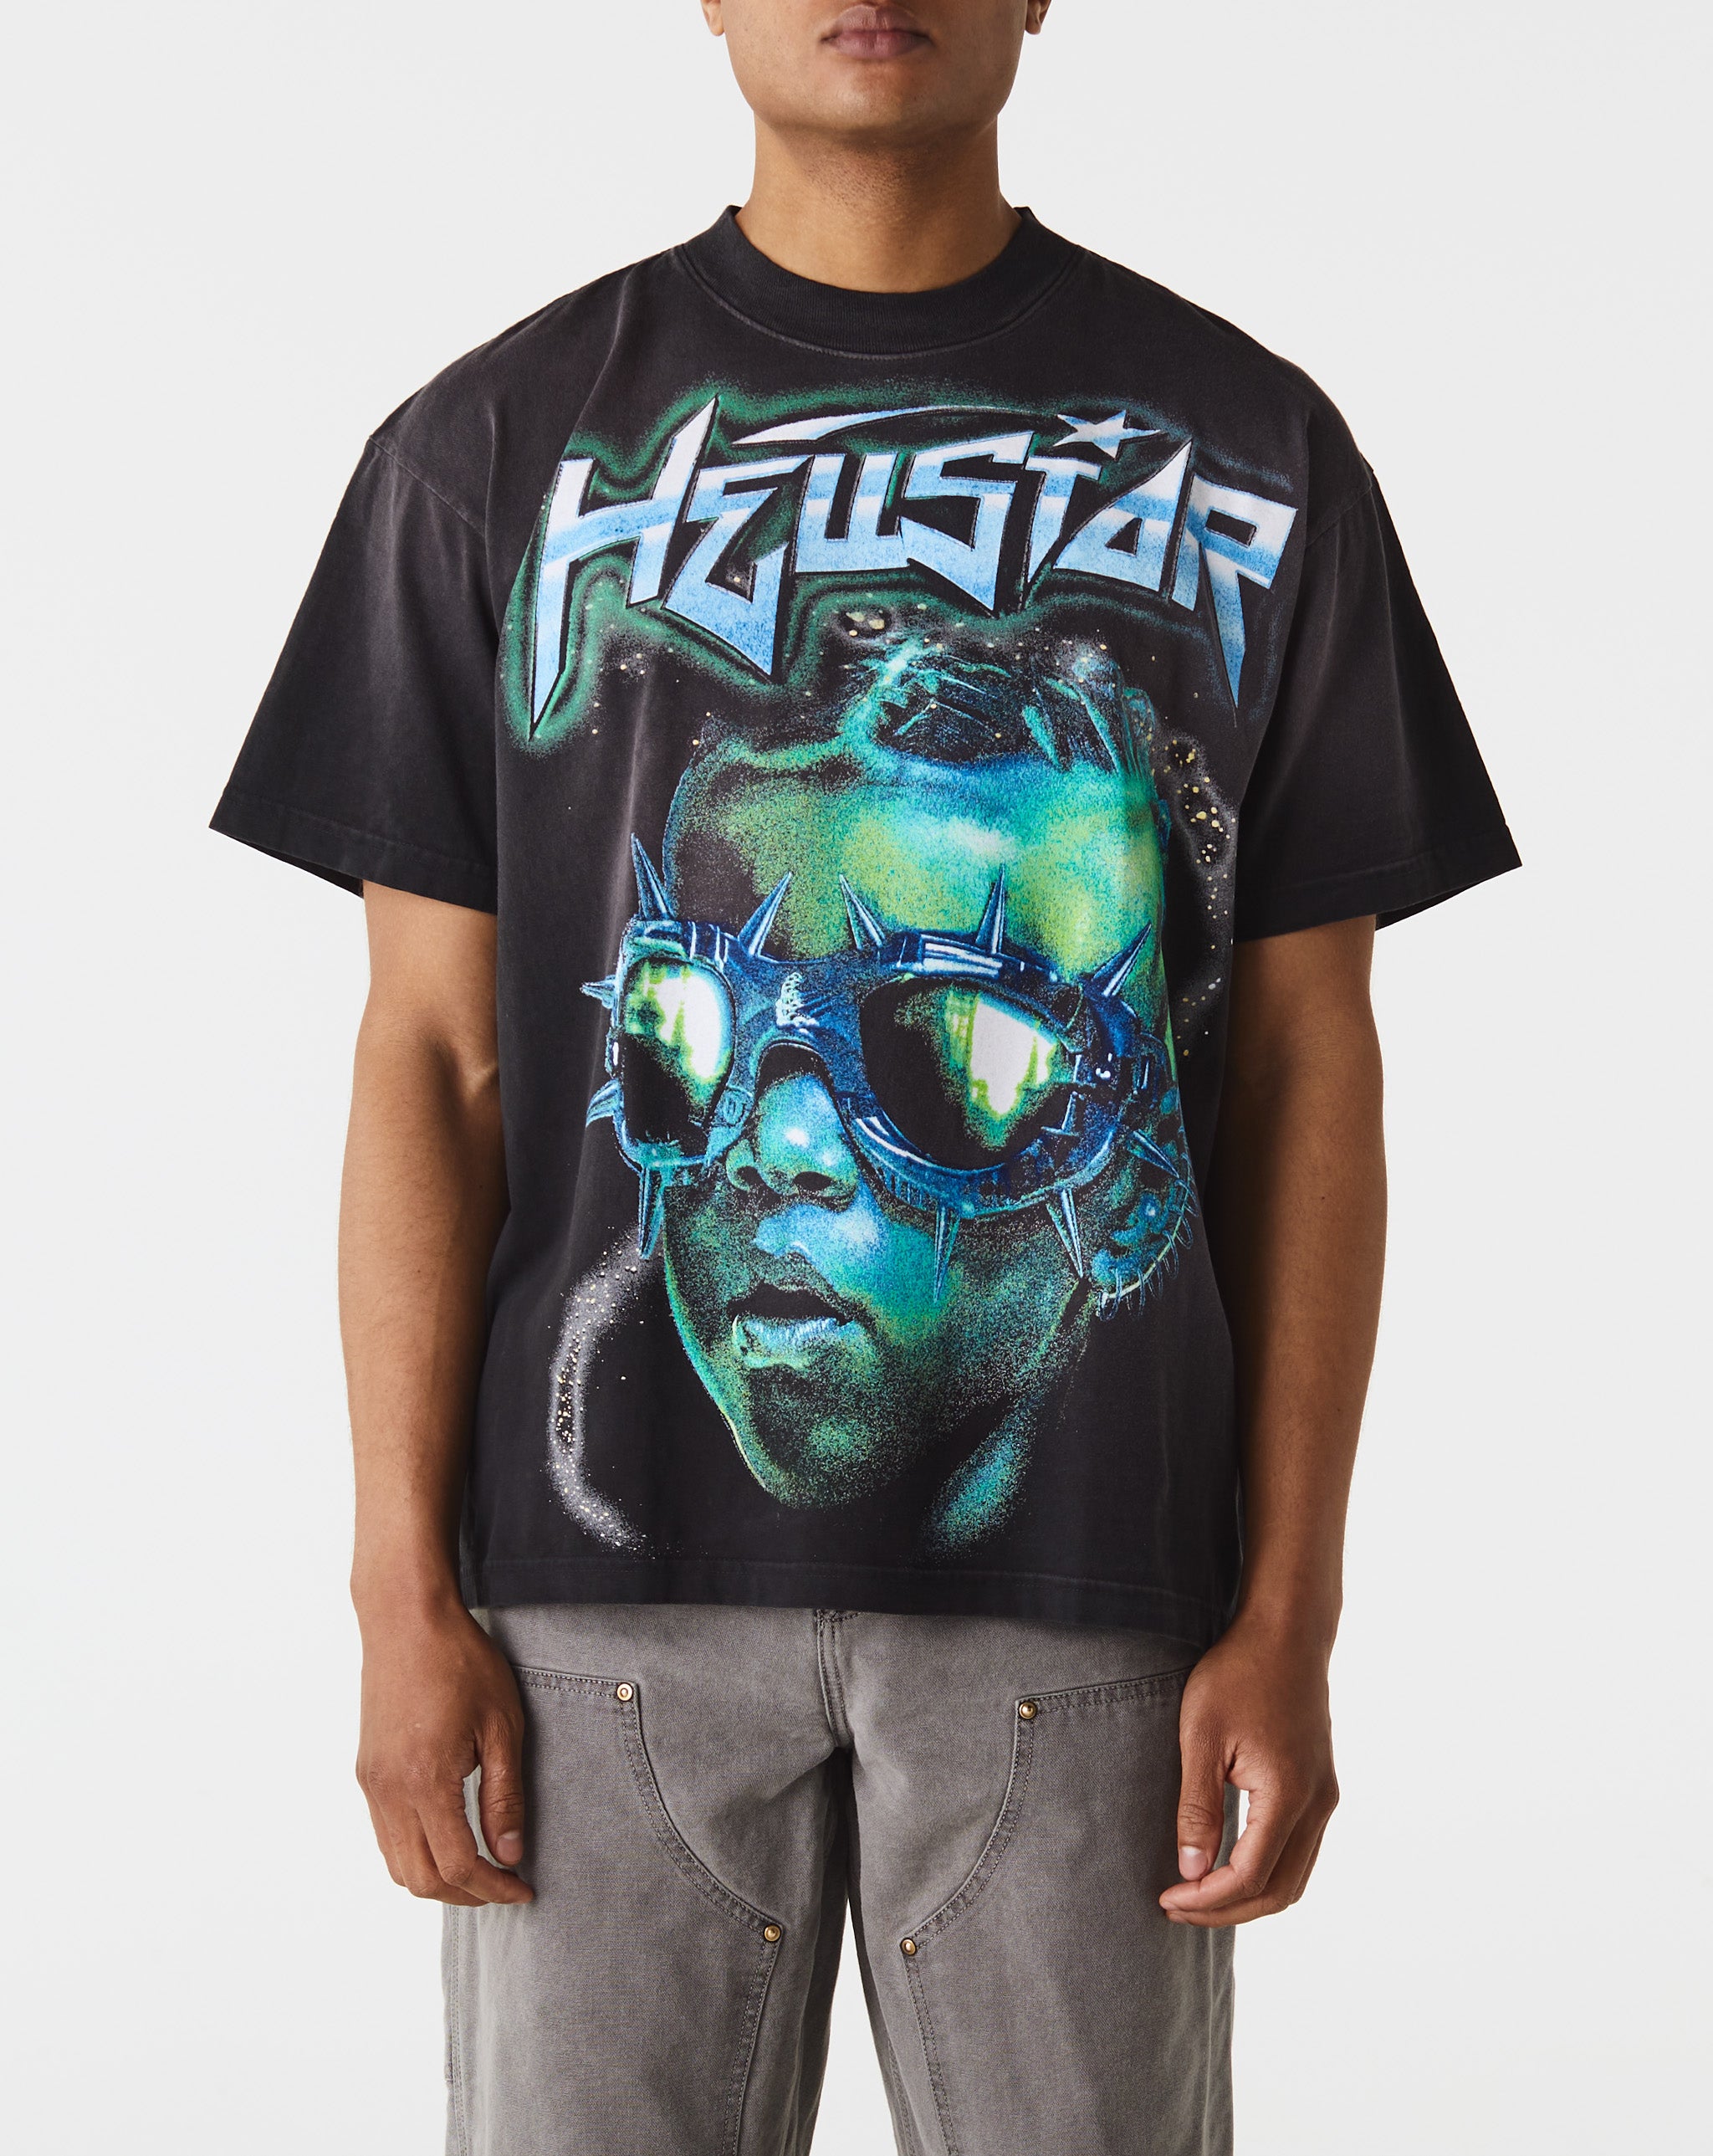 Hellstar The Future T-Shirt  - Cheap Urlfreeze Jordan outlet